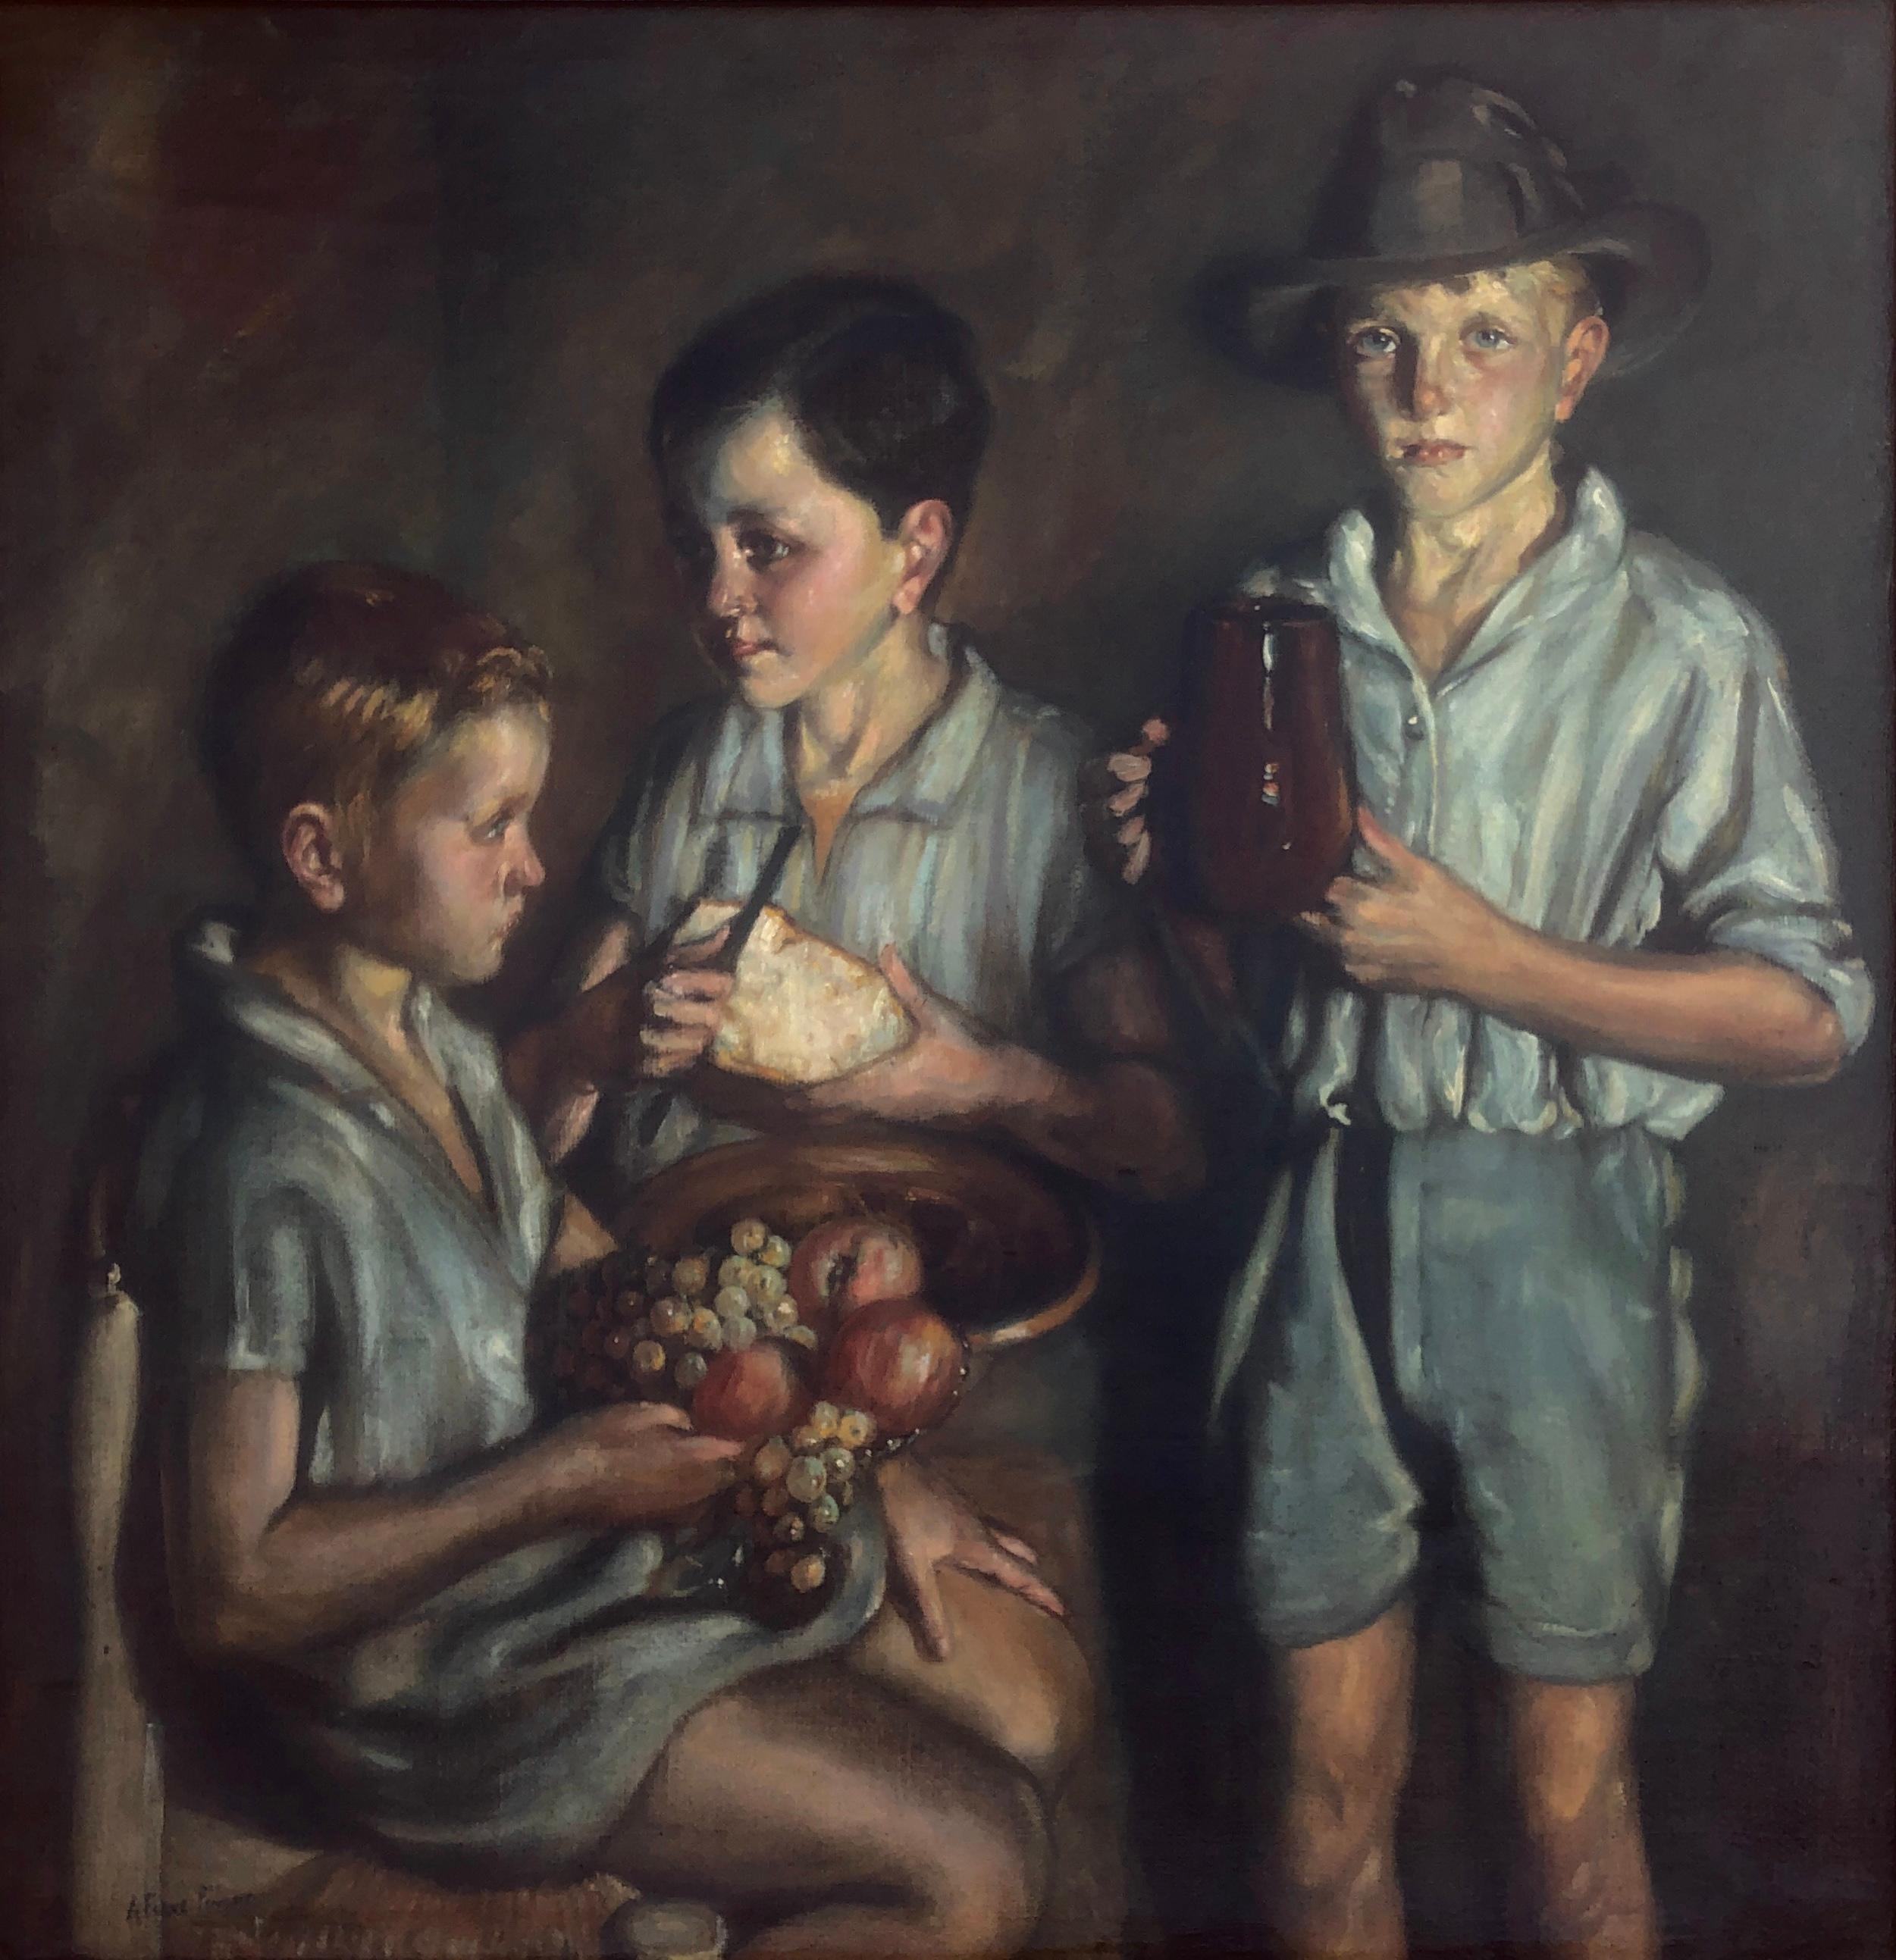 Child & Child Child d'après-guerre peinture à l'huile sur toile de jute